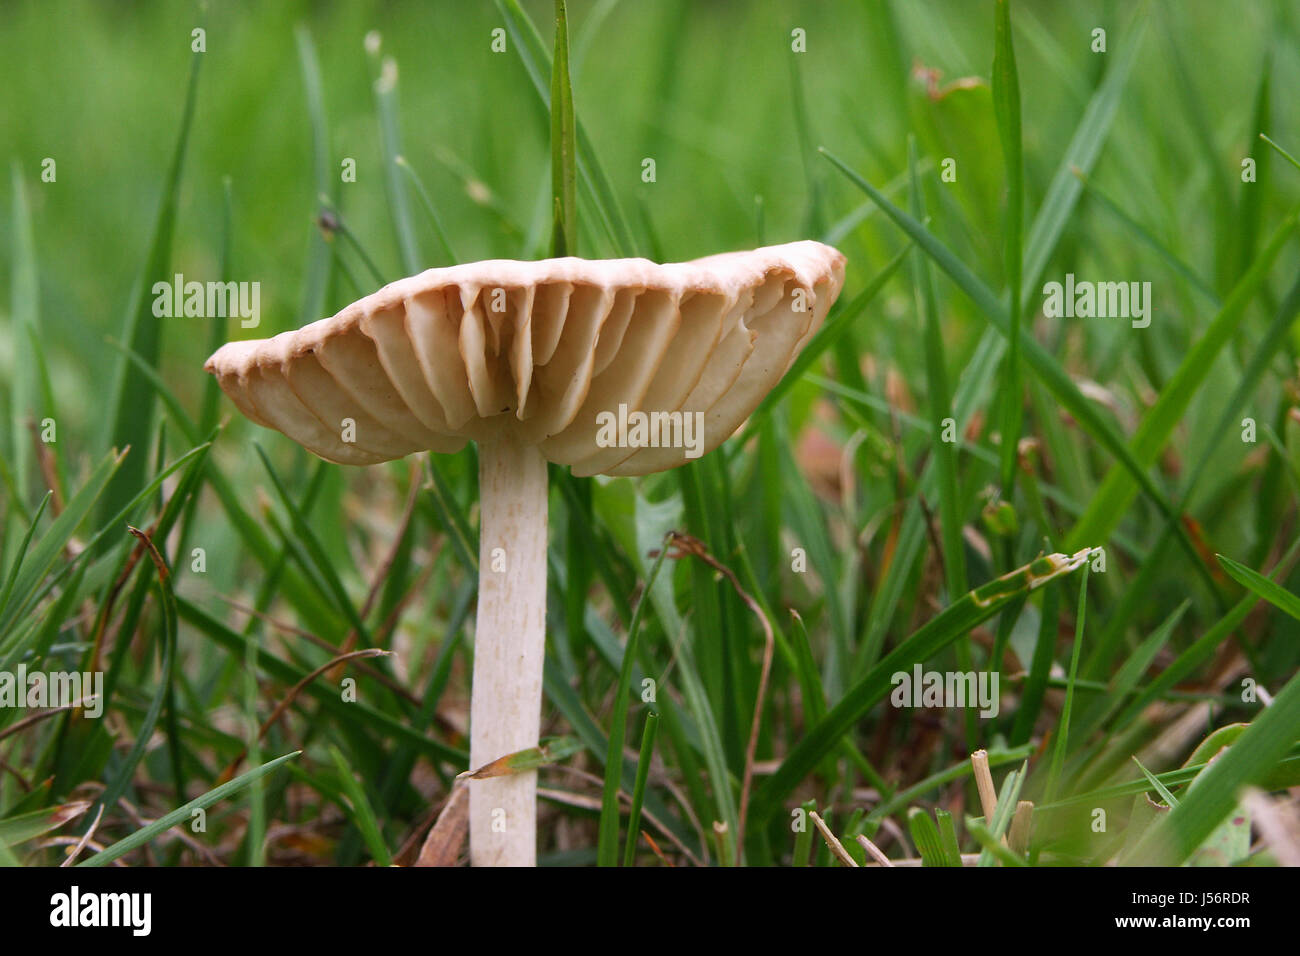 Funghi funghi commestibili funghi non tossici di erba di prato verde erba tossica Foto Stock